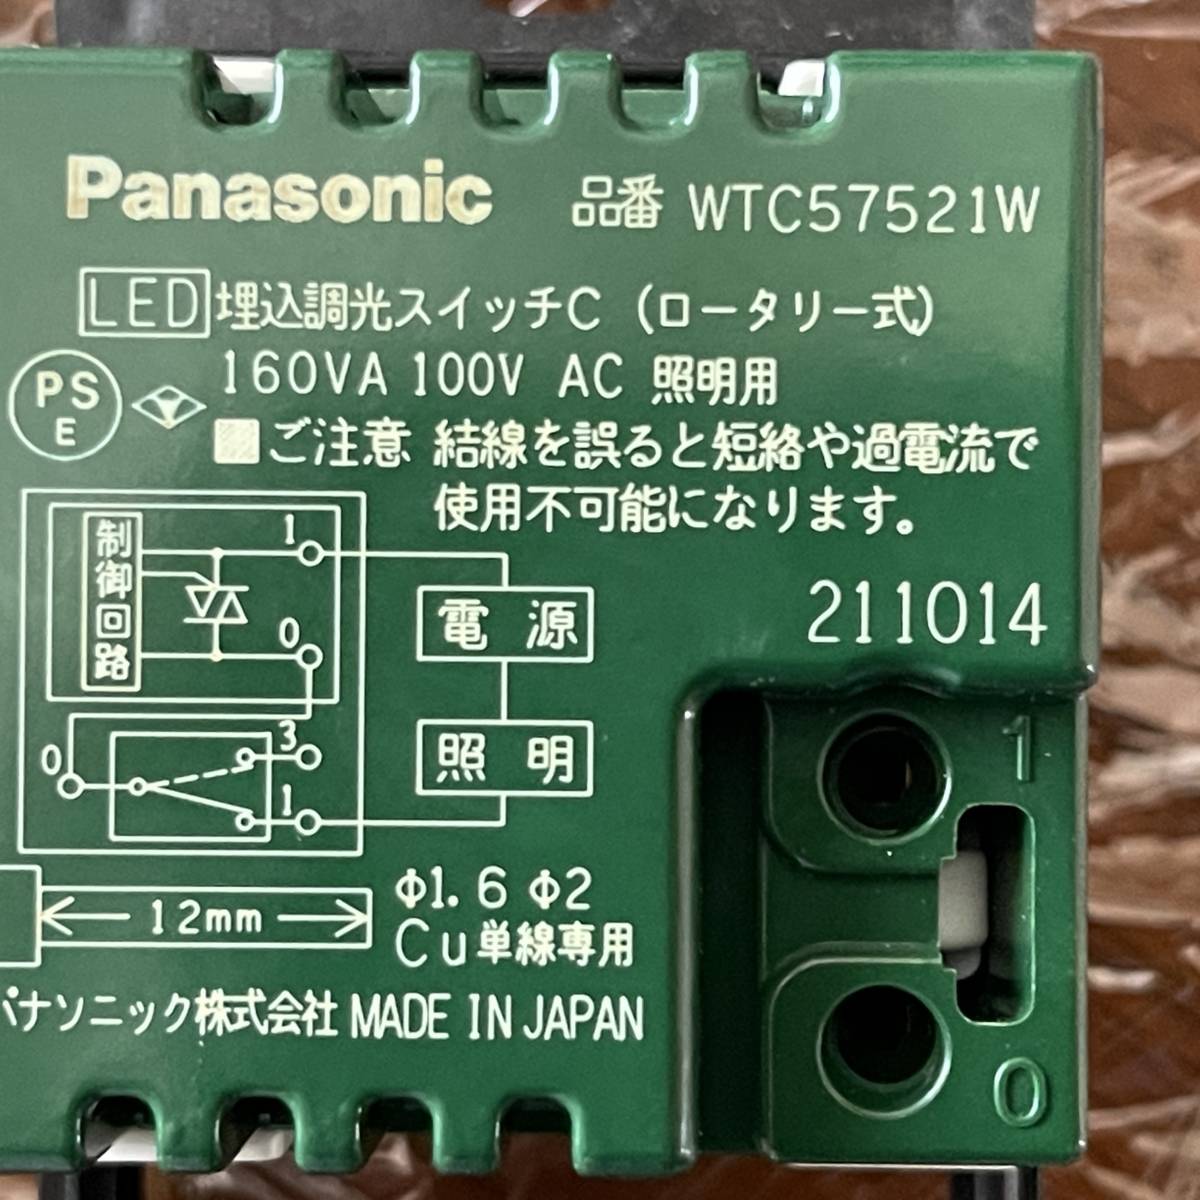 (TANE) LED埋込調光スイッチC(WTC57521W) モール用スイッチボックス(MSB-2M) セット USED 未検品ジャンク_画像6